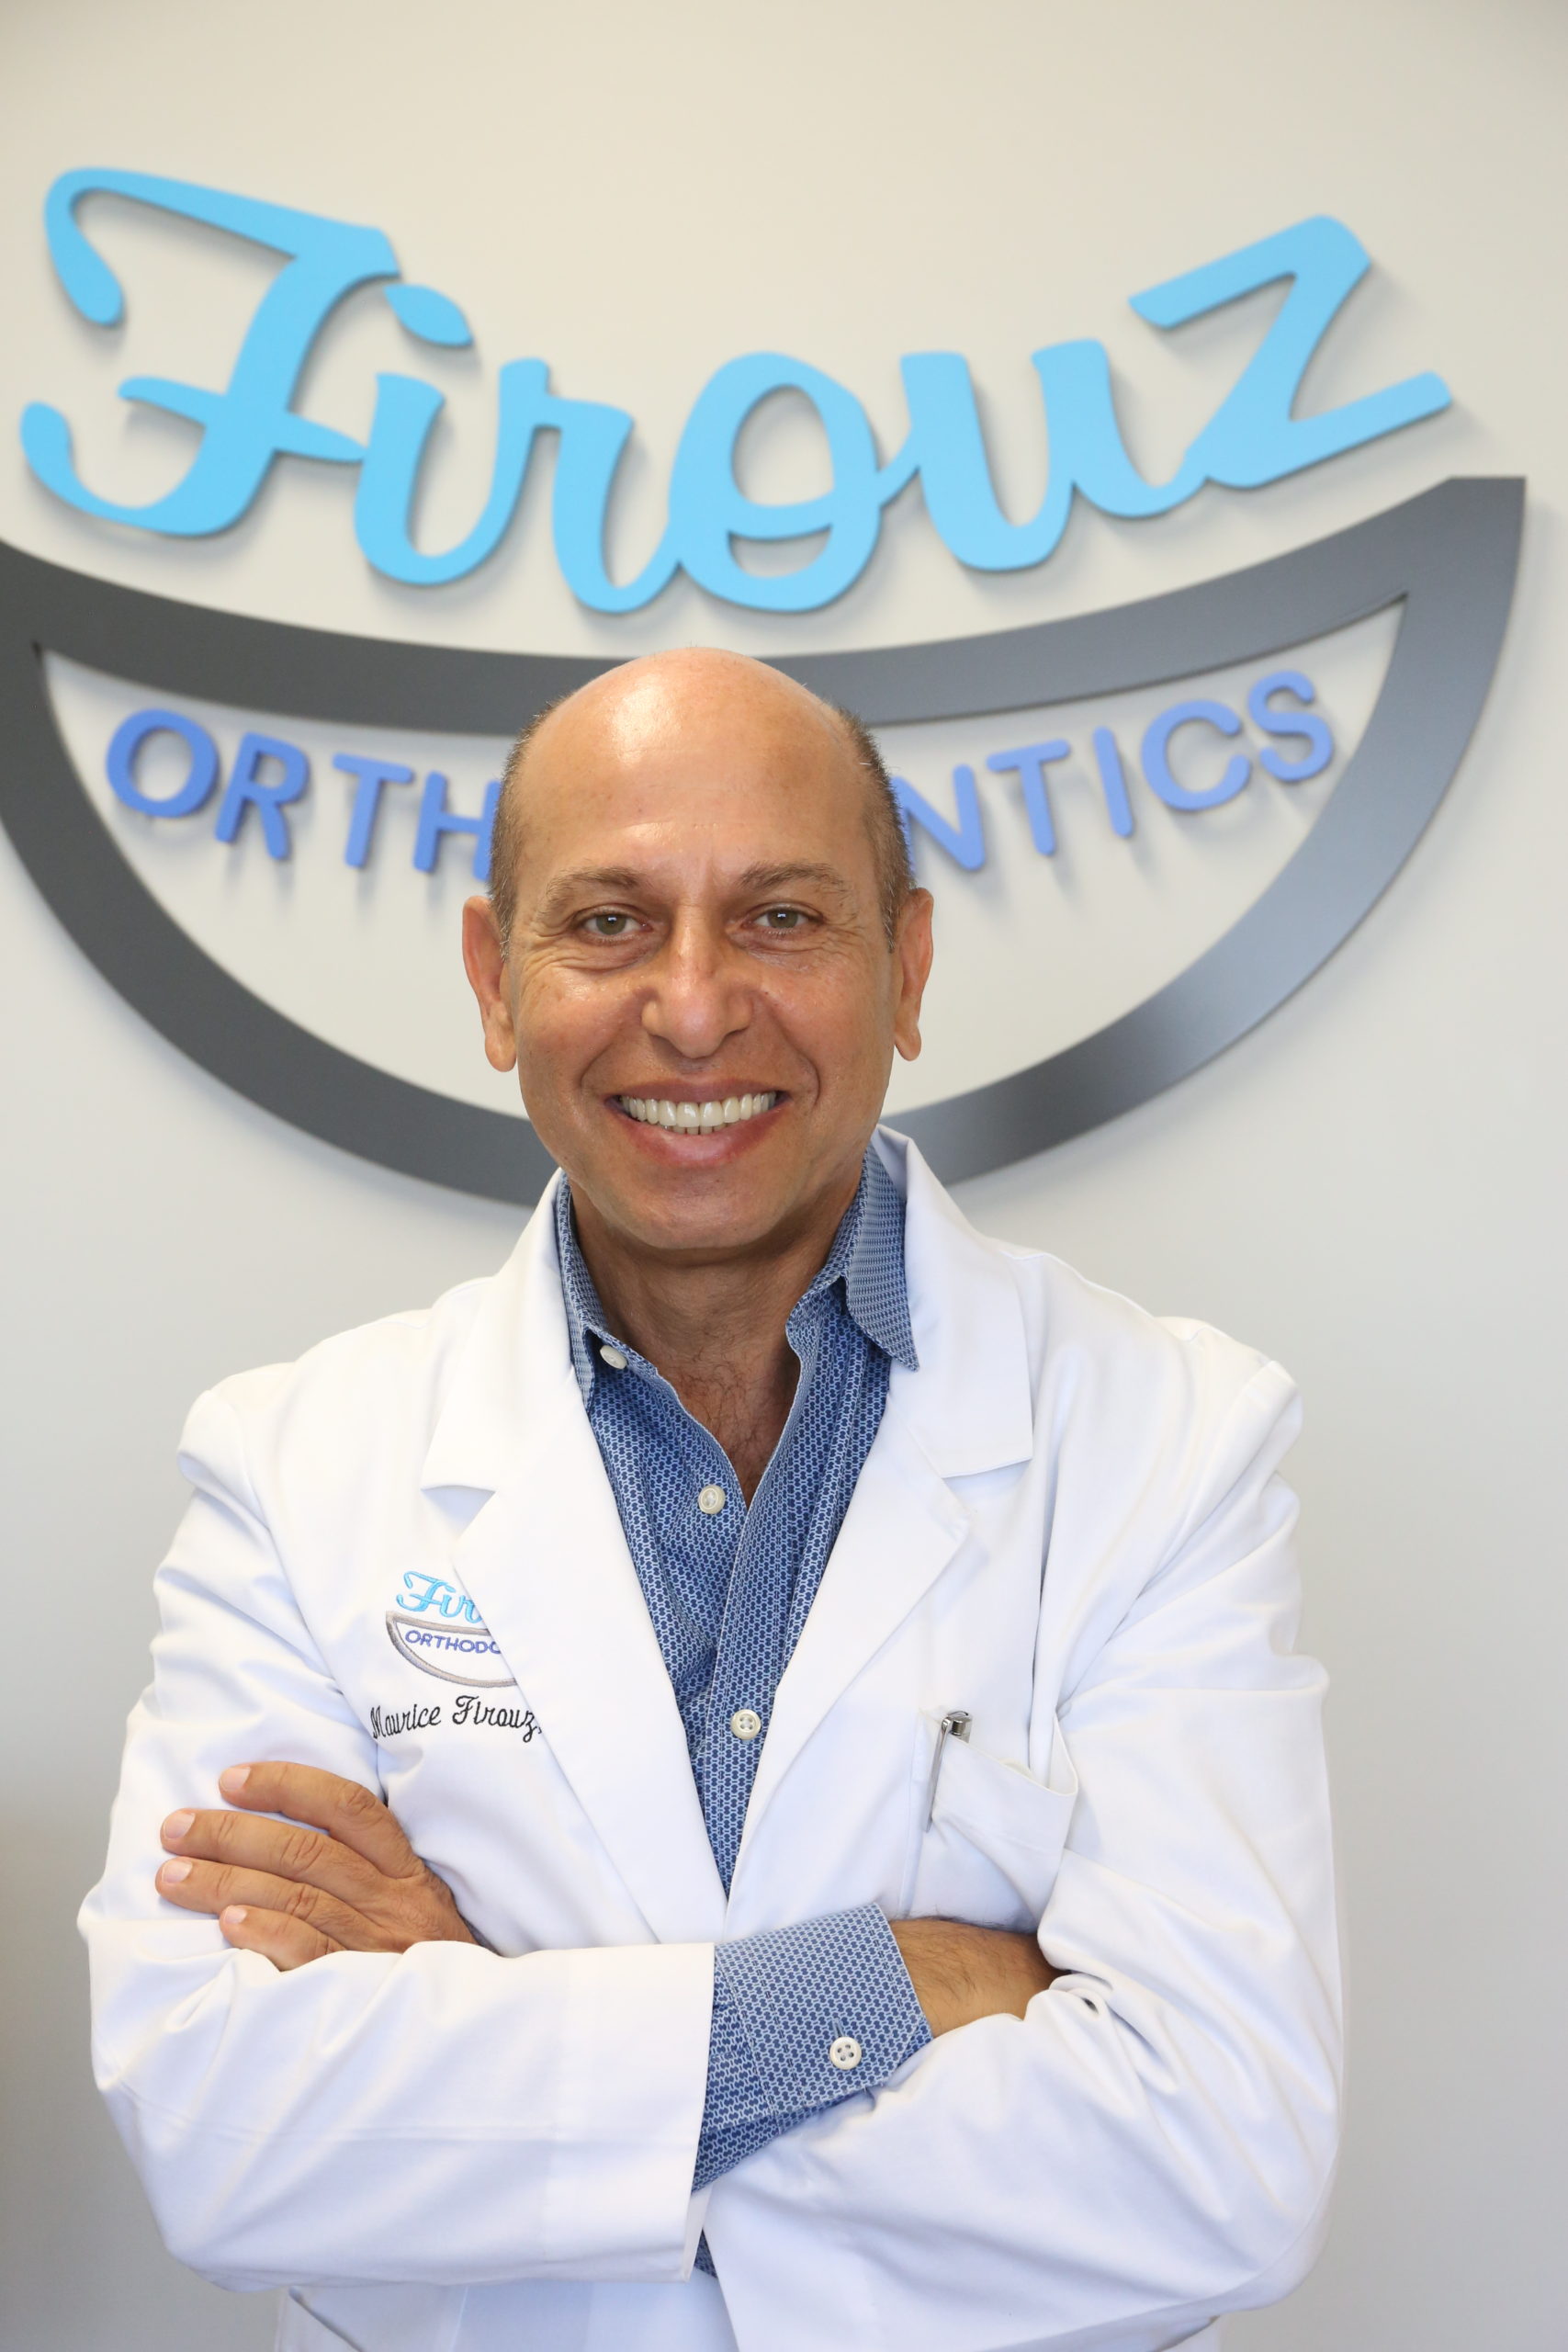 Doctor Firouz of Firouz Orthodontics in West Los Angeles